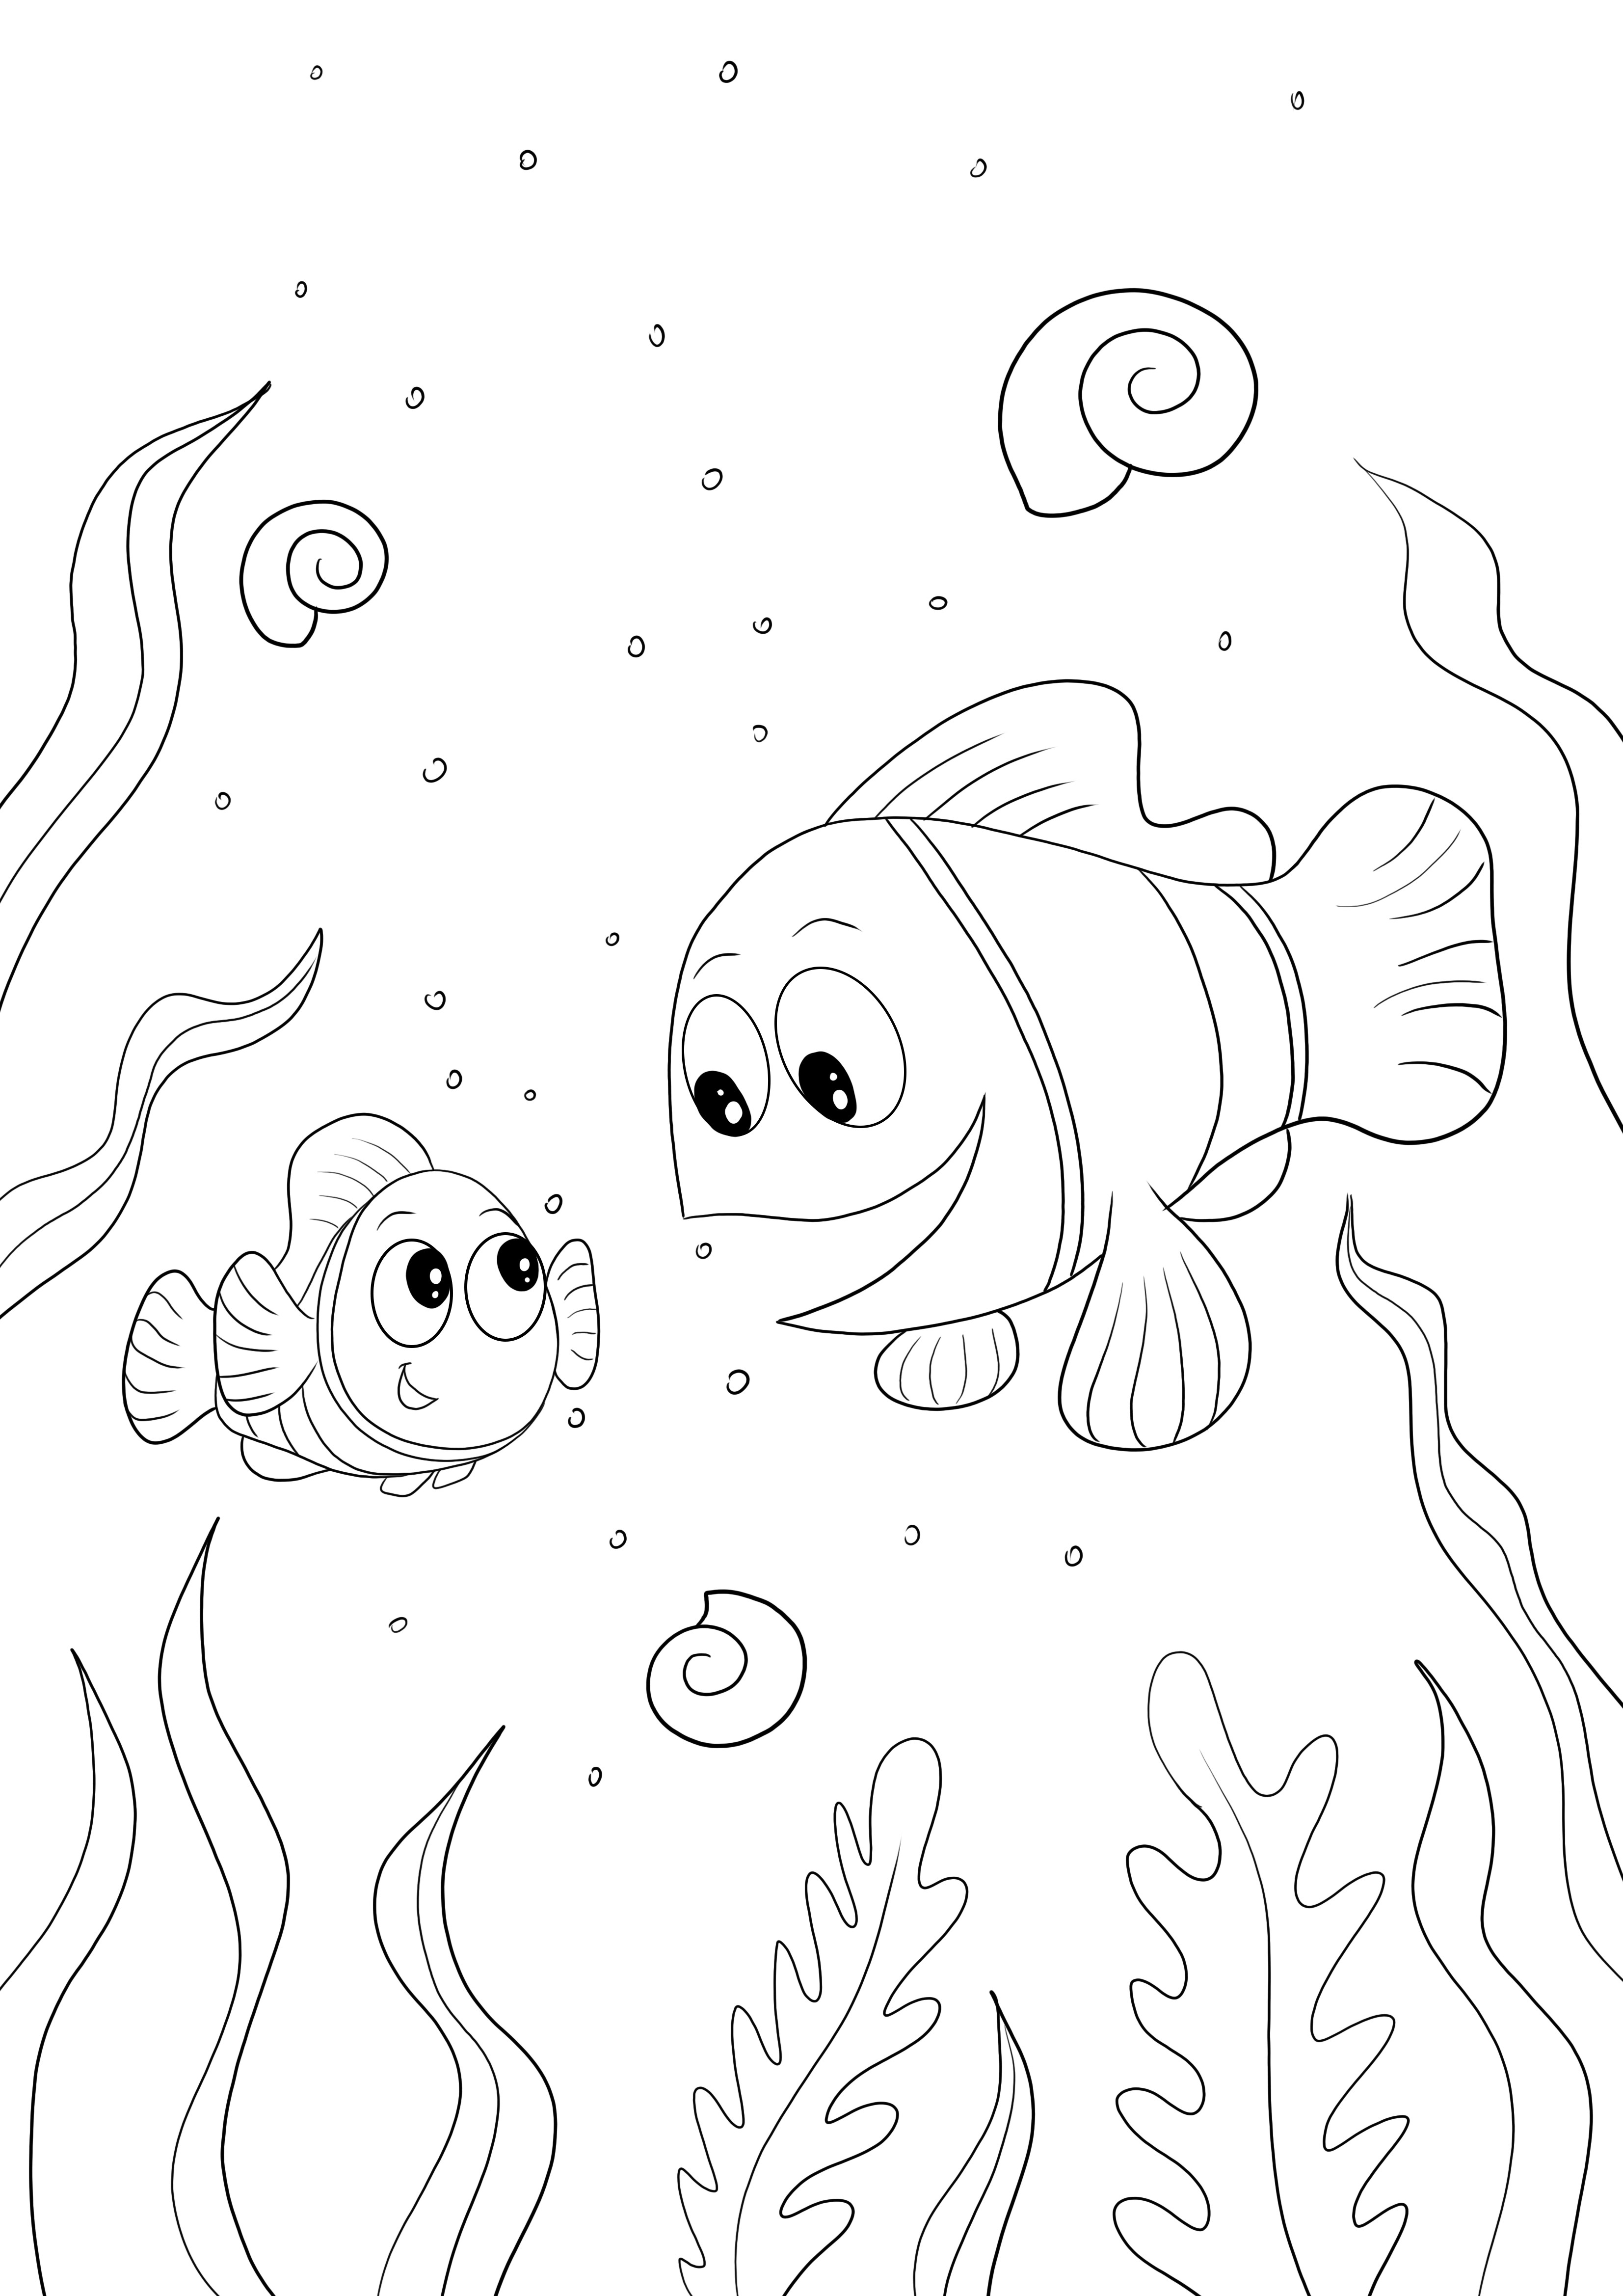 Ücretsiz olarak yazdırmak için Marlin, Dory, Nemo'nun basit ve kolay renklendirilmesi